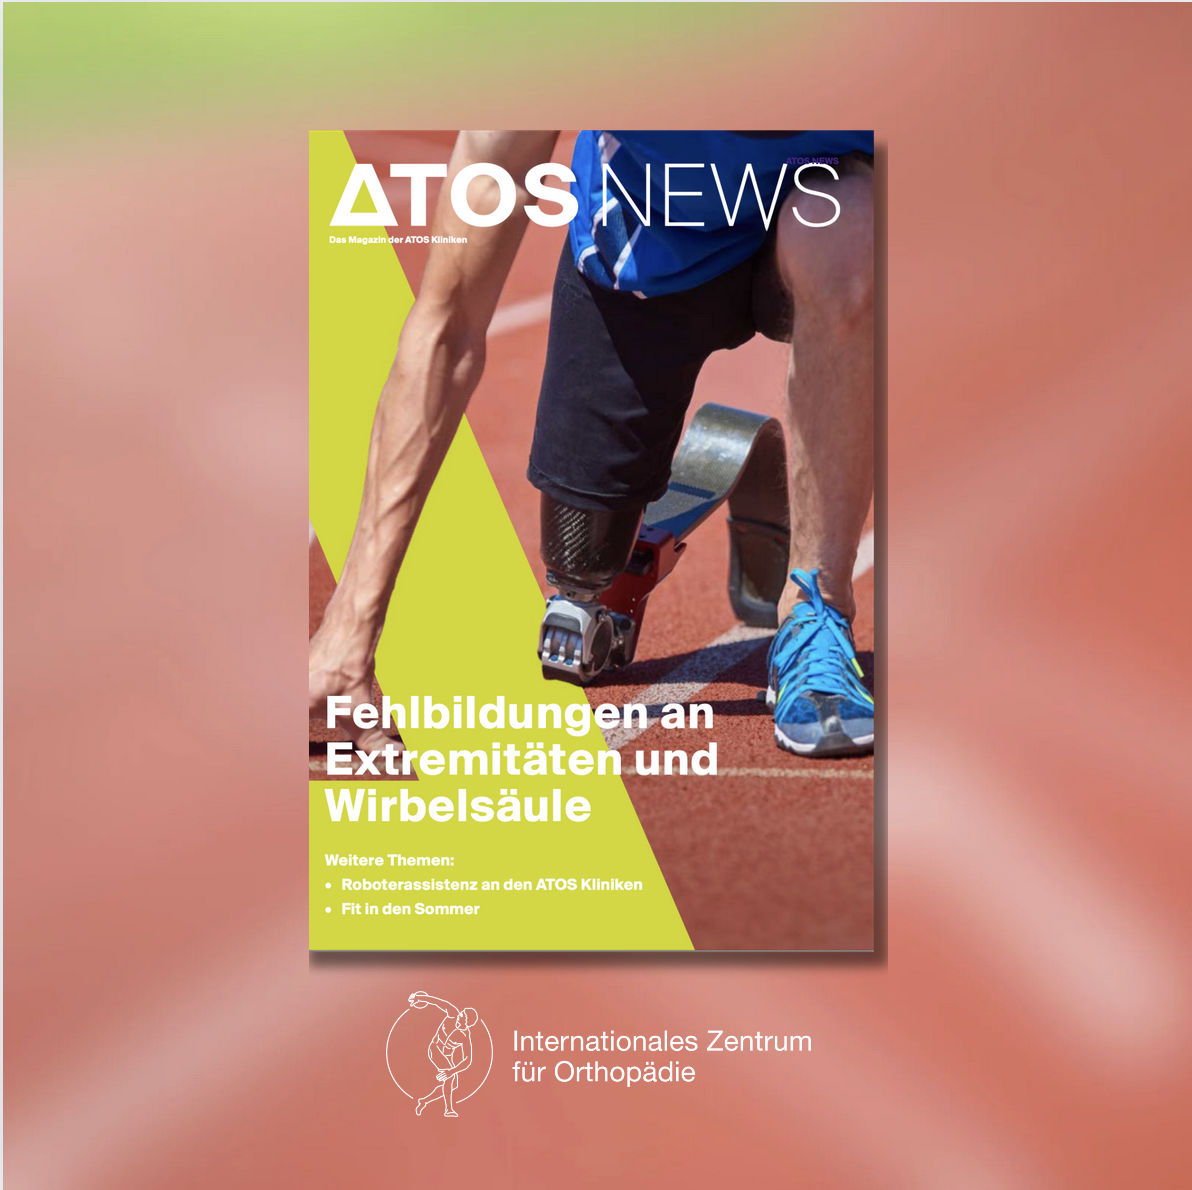 “Fehlbildungen an Extemitäten und Wirbelsäule” – das neue ATOS News Magazin ist da!